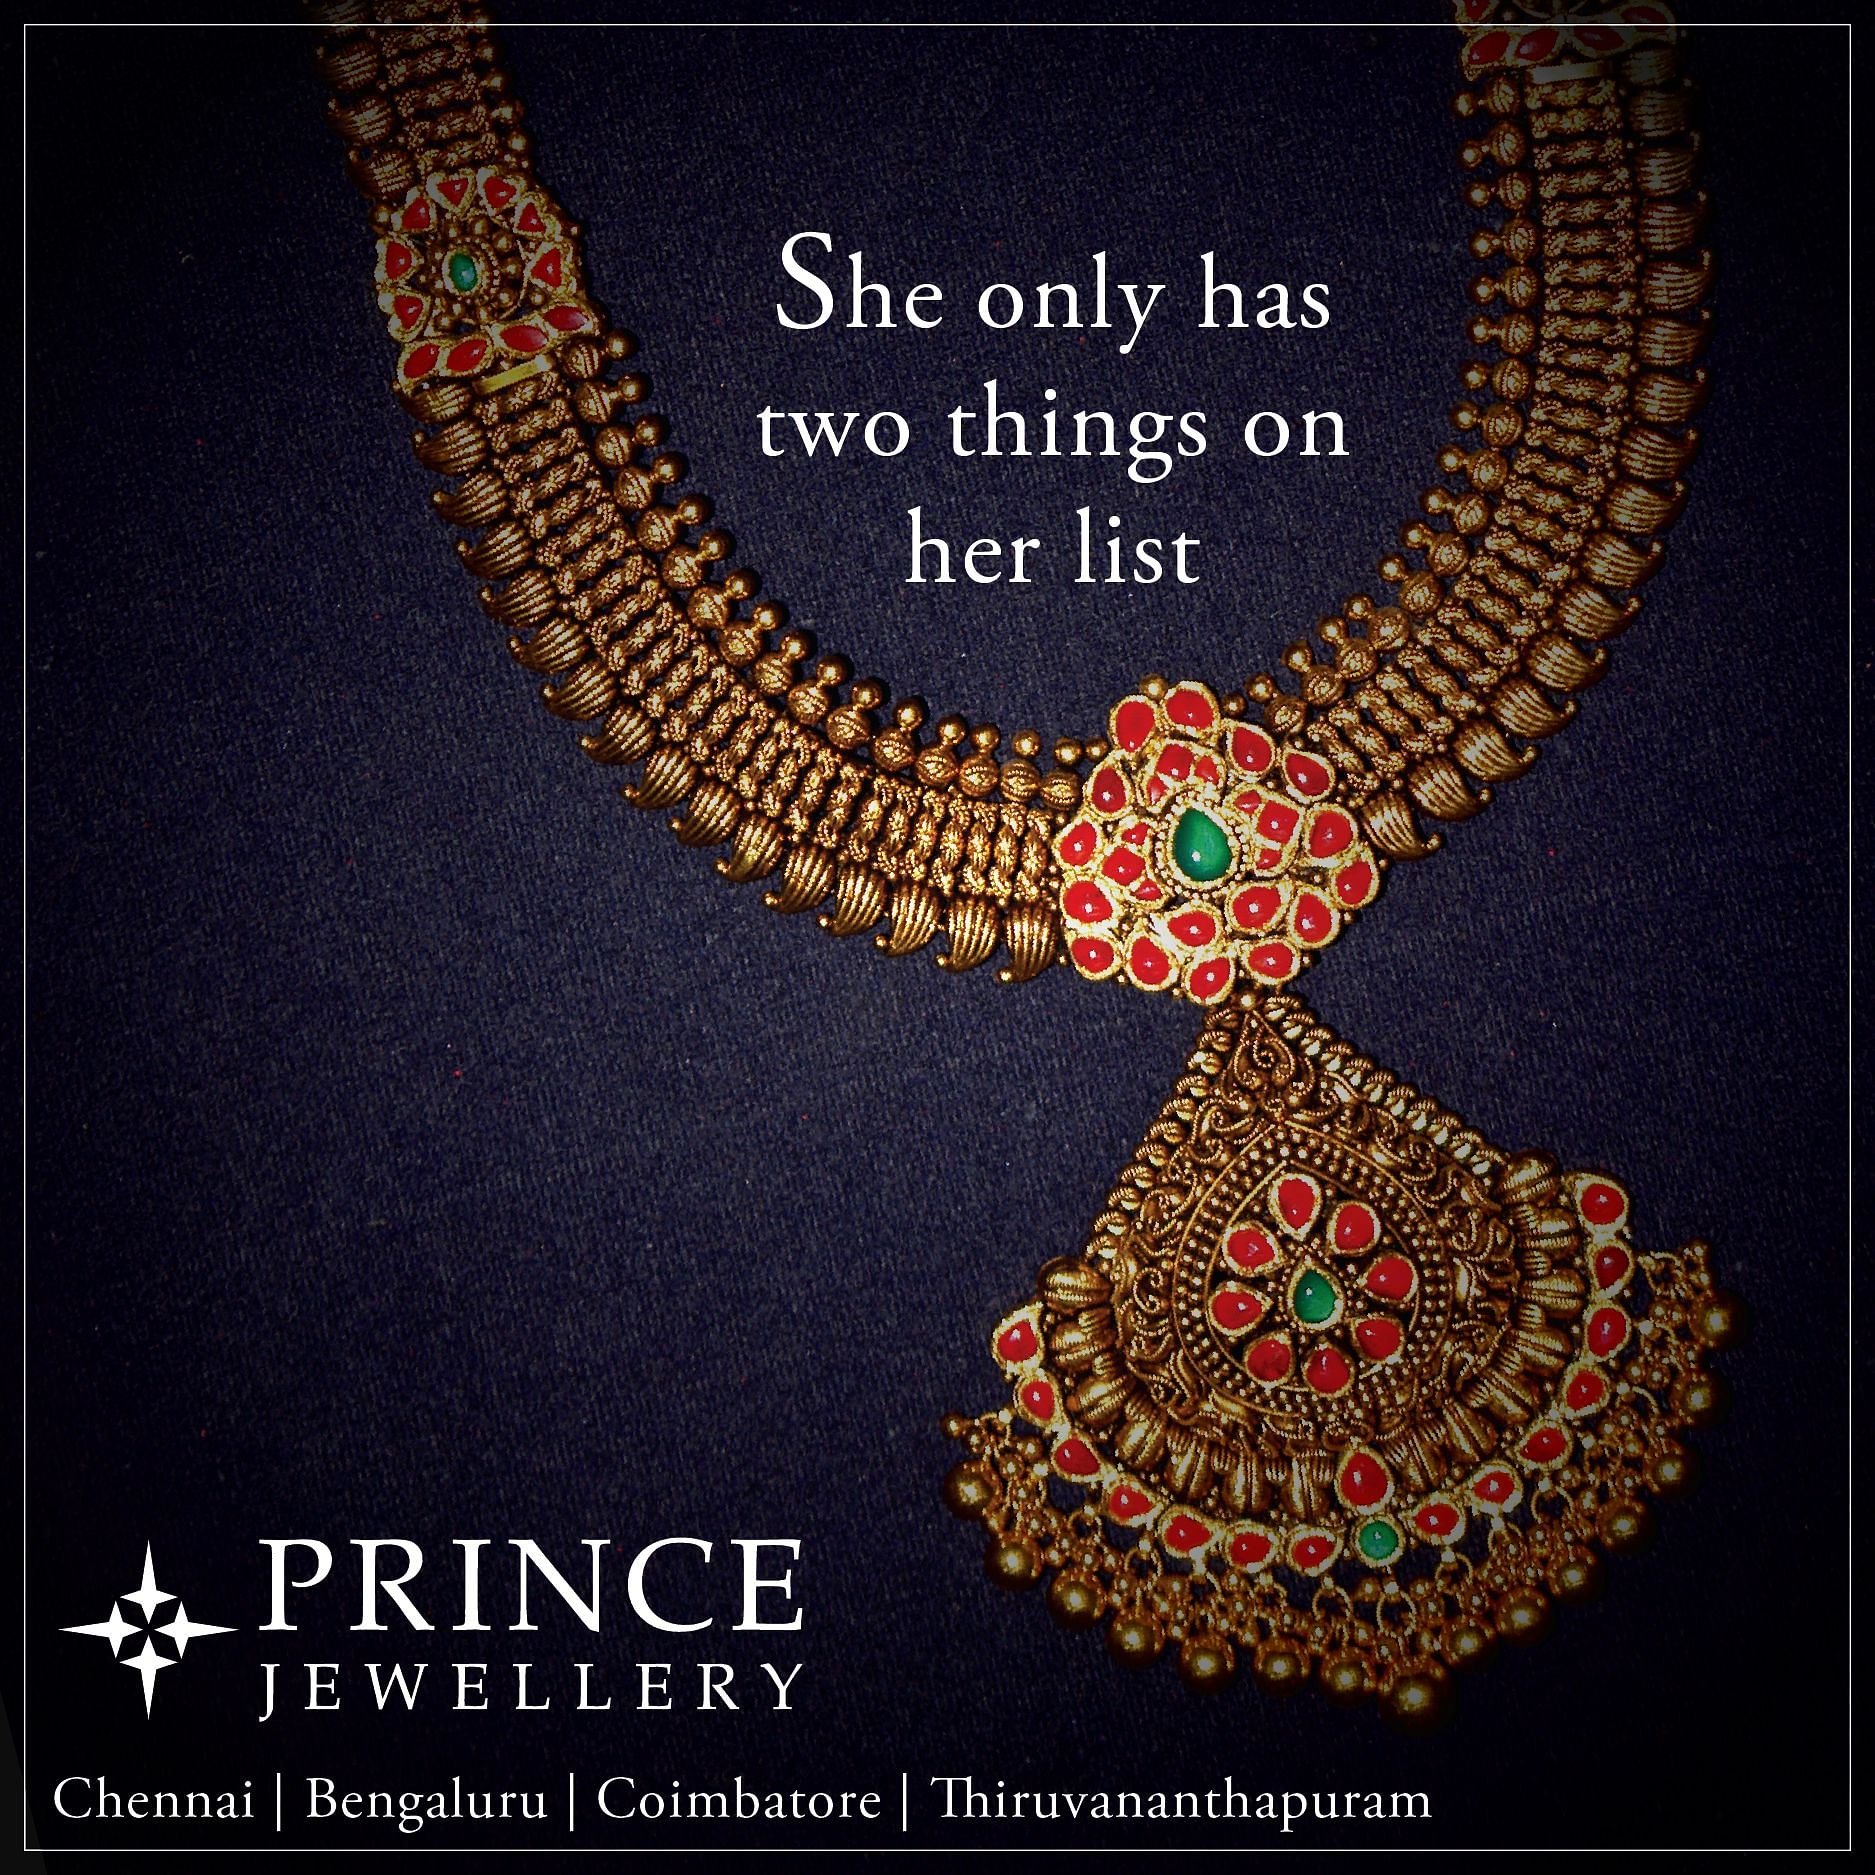 Prince Jewellery: